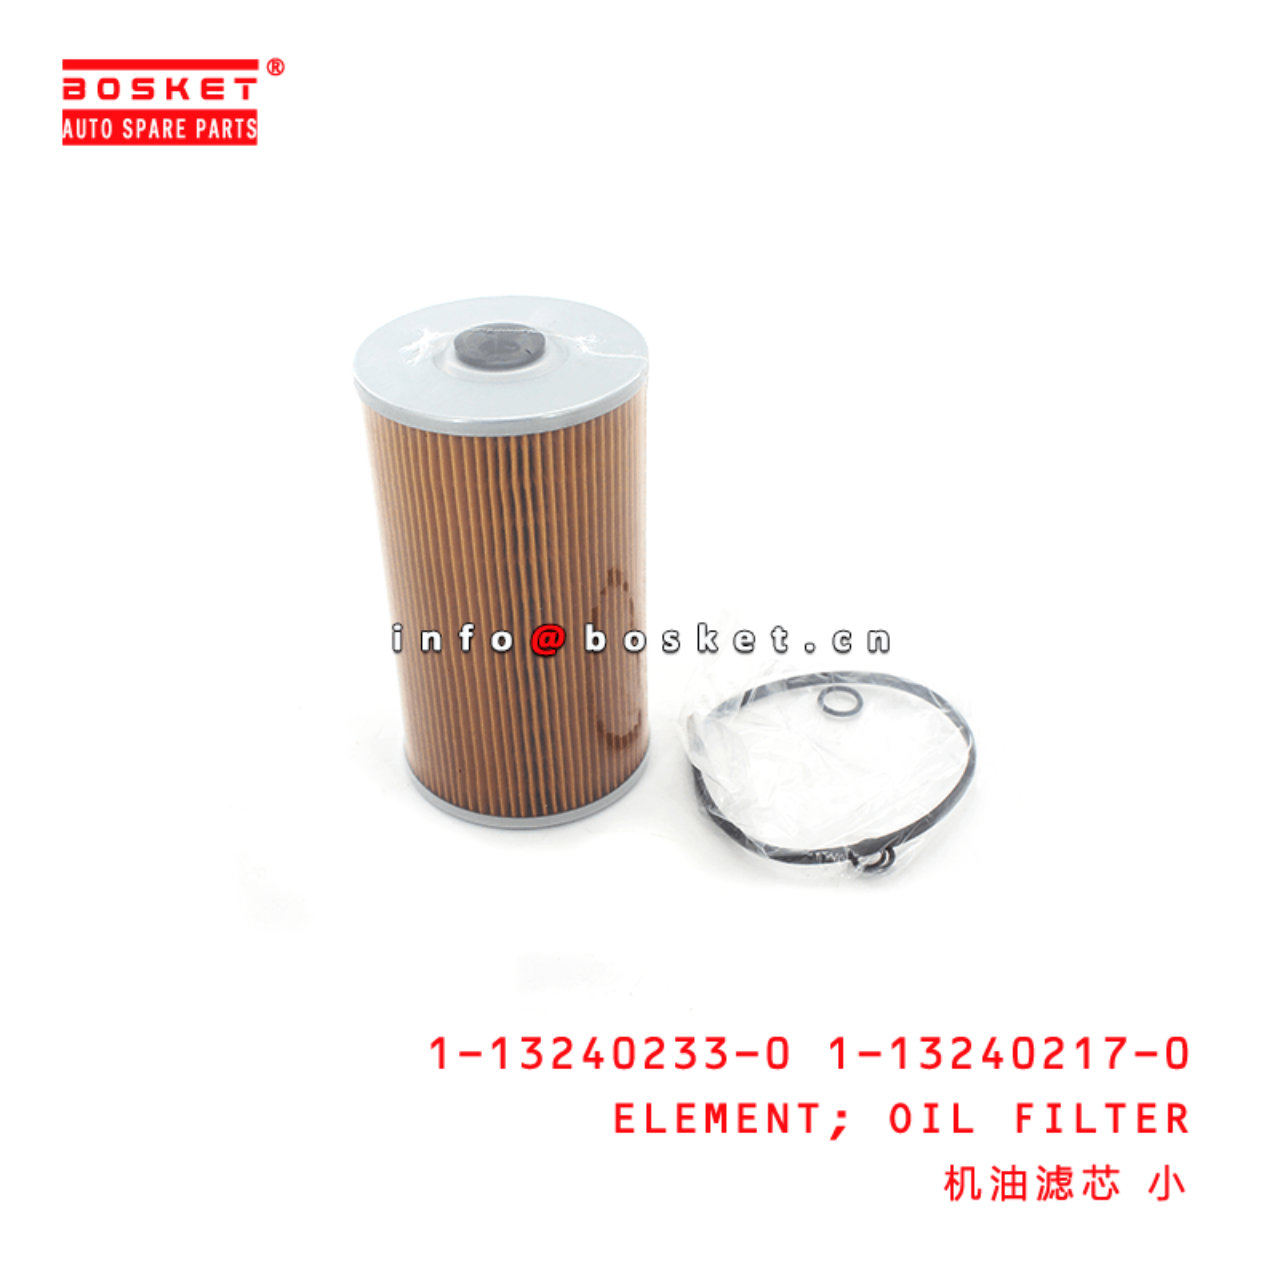 1-13240233-0 1-13240217-0 1132402330 1132402170 Oil Filter Element Suitable for ISUZU CXZ51 VC46 6UZ